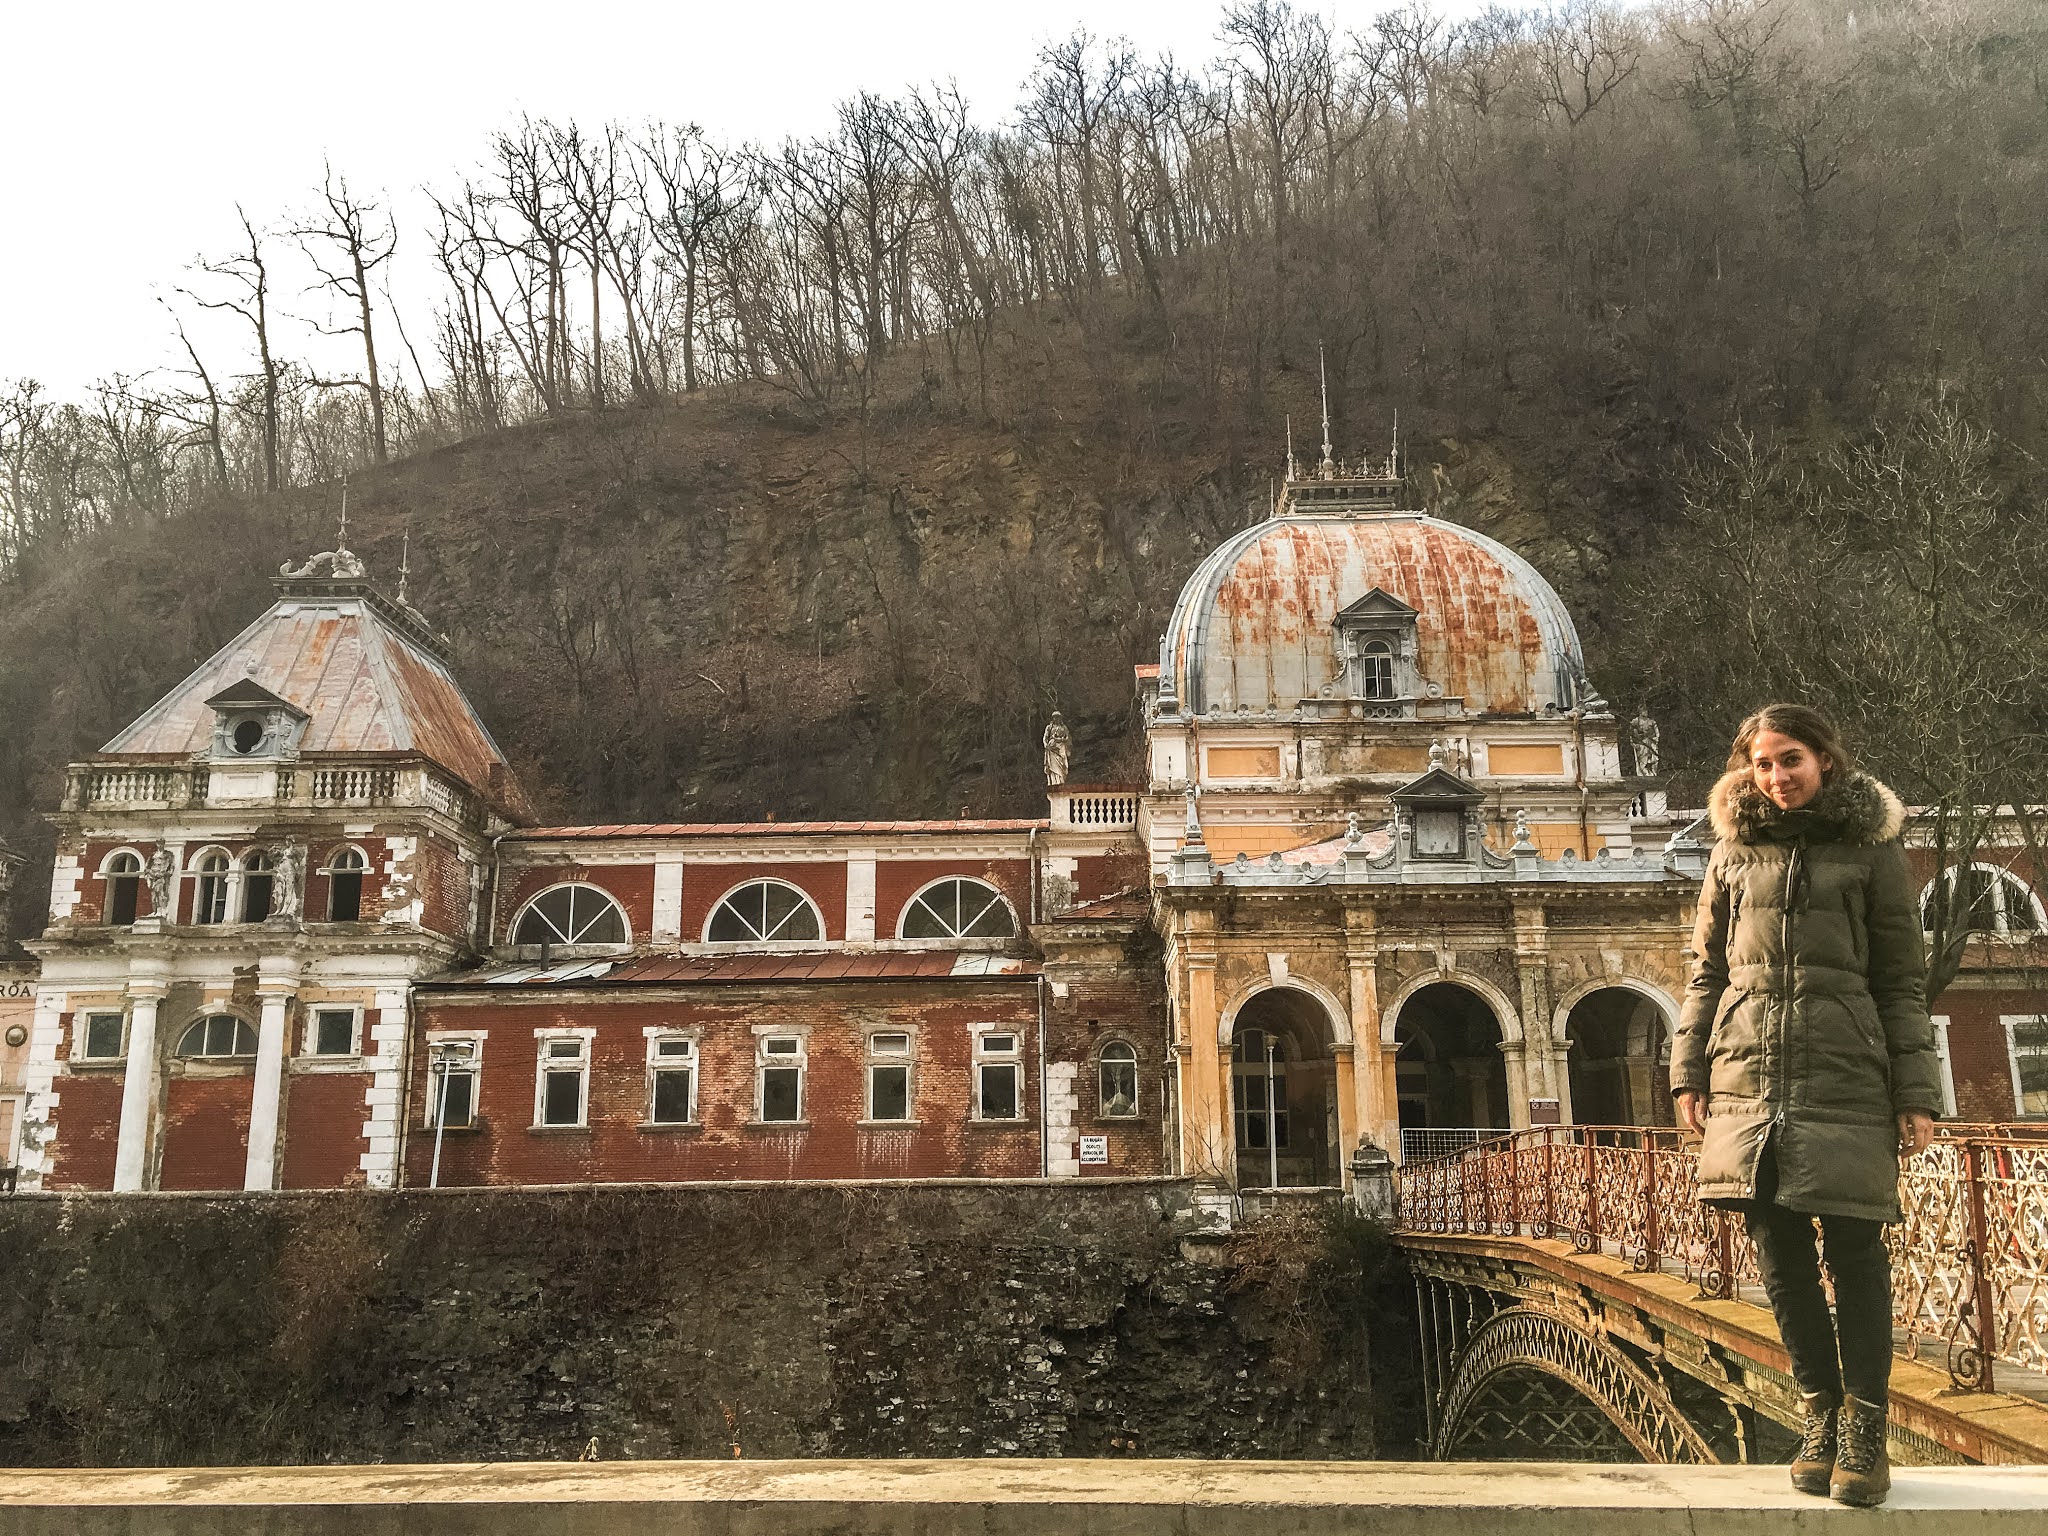 Malvina Dunder blog rozwój osobisty, relacje, podróże Rumunia miasto Herculane opuszczone kasyno